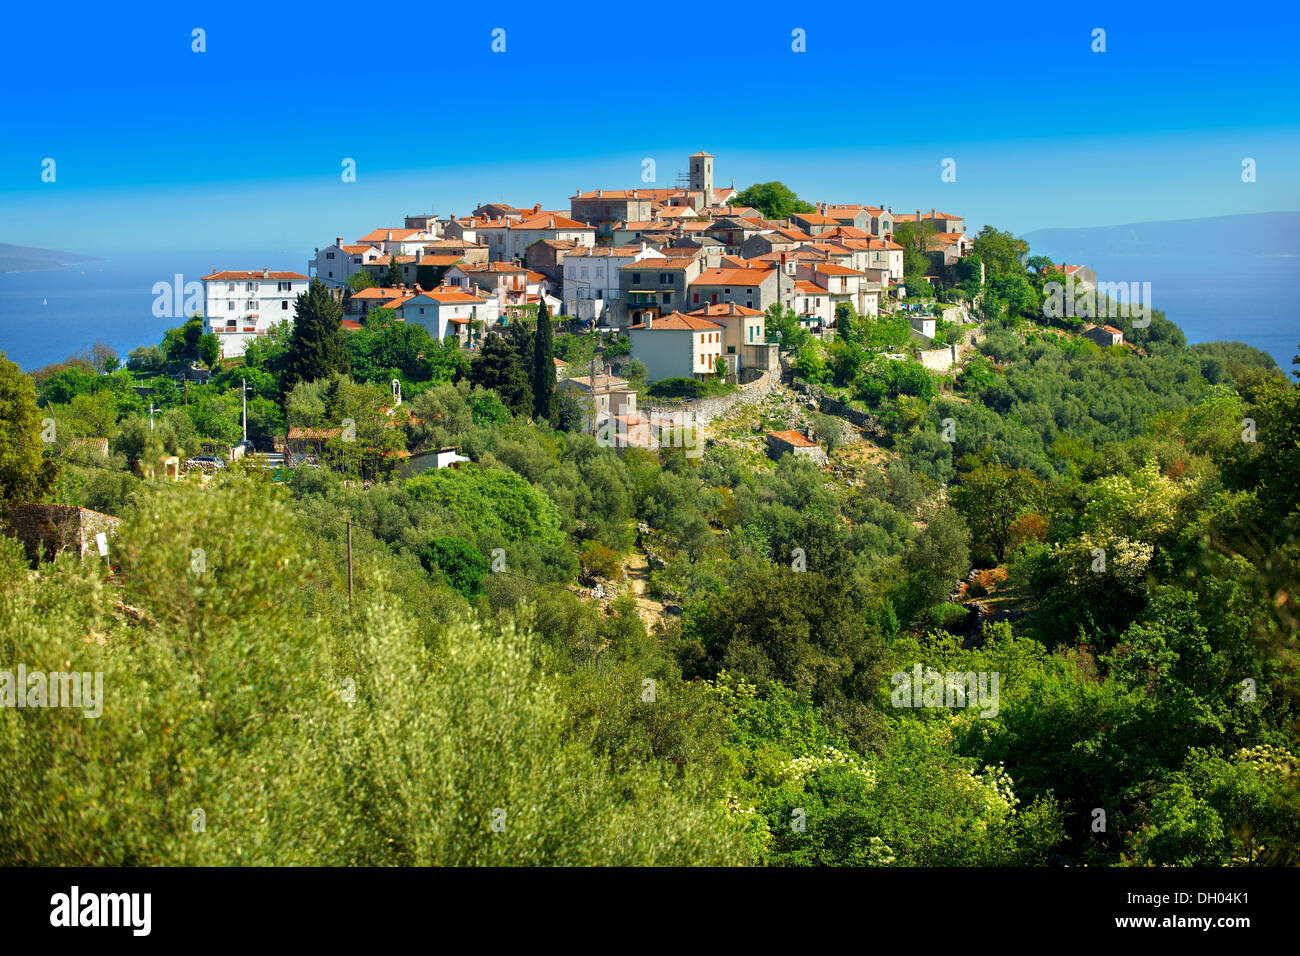 Beli hill town, île de Cres, Croatie, Europe Banque D'Images